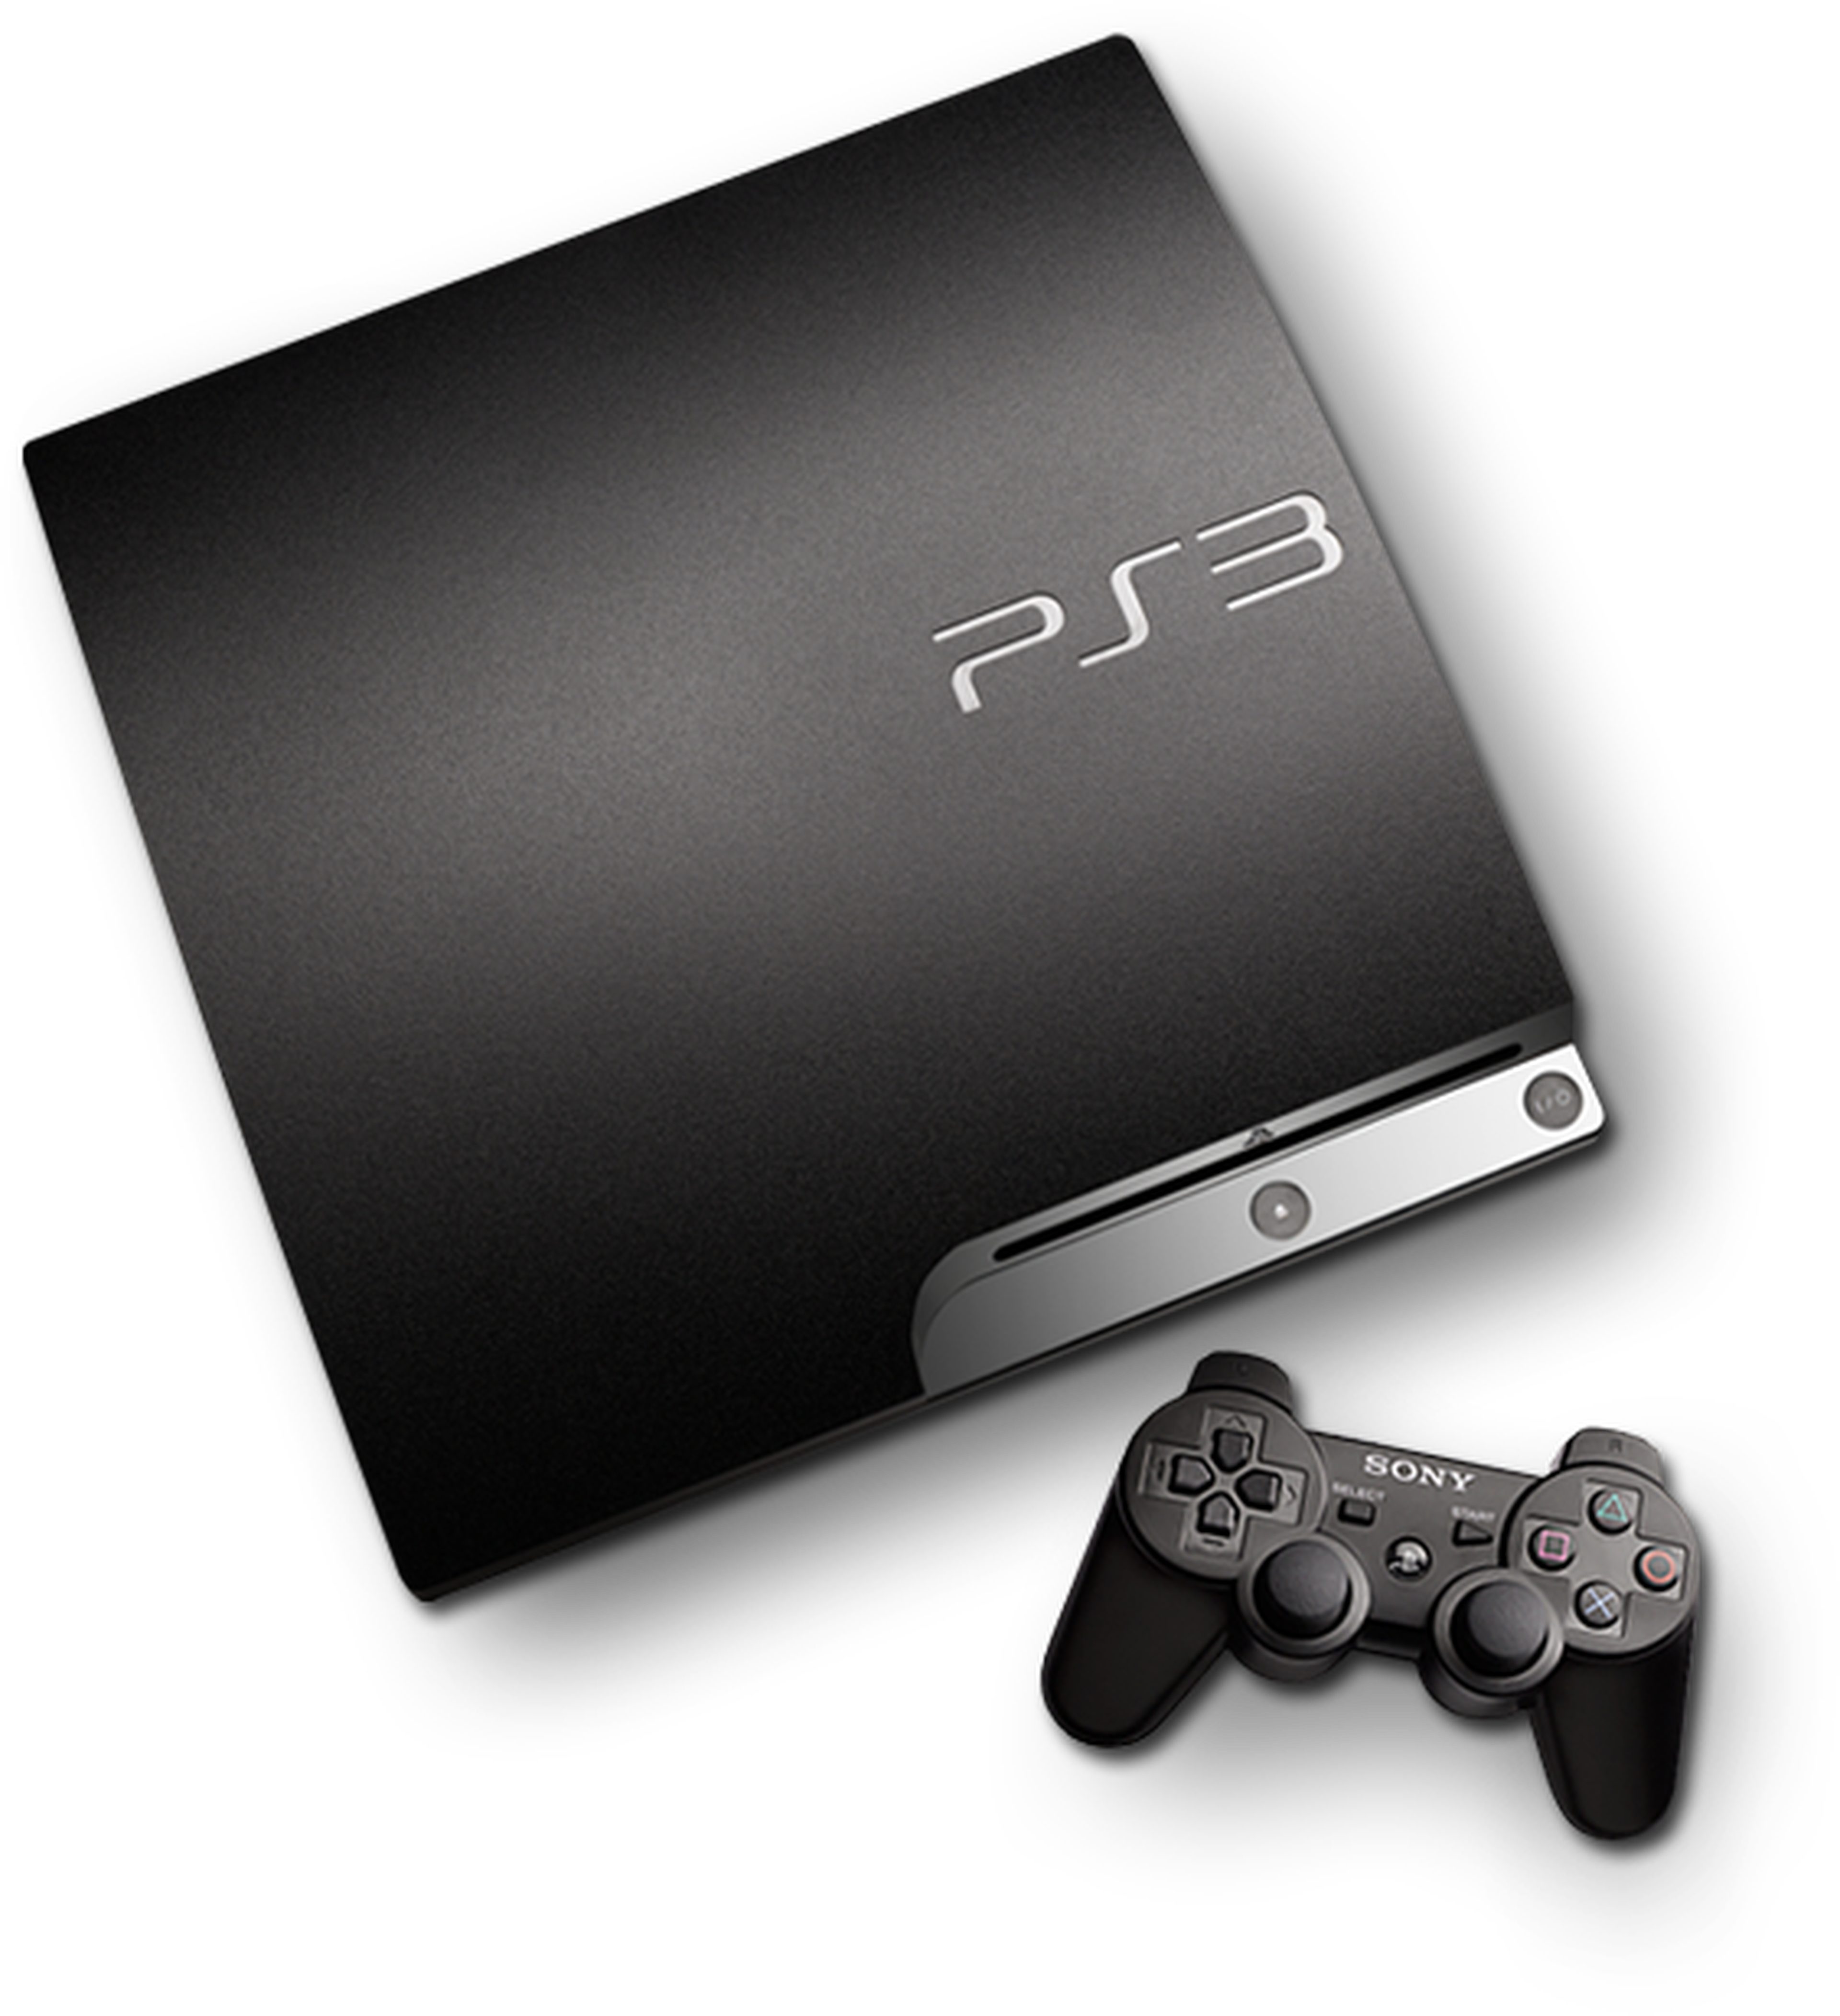 PlayStation 3 sigue teniendo vida